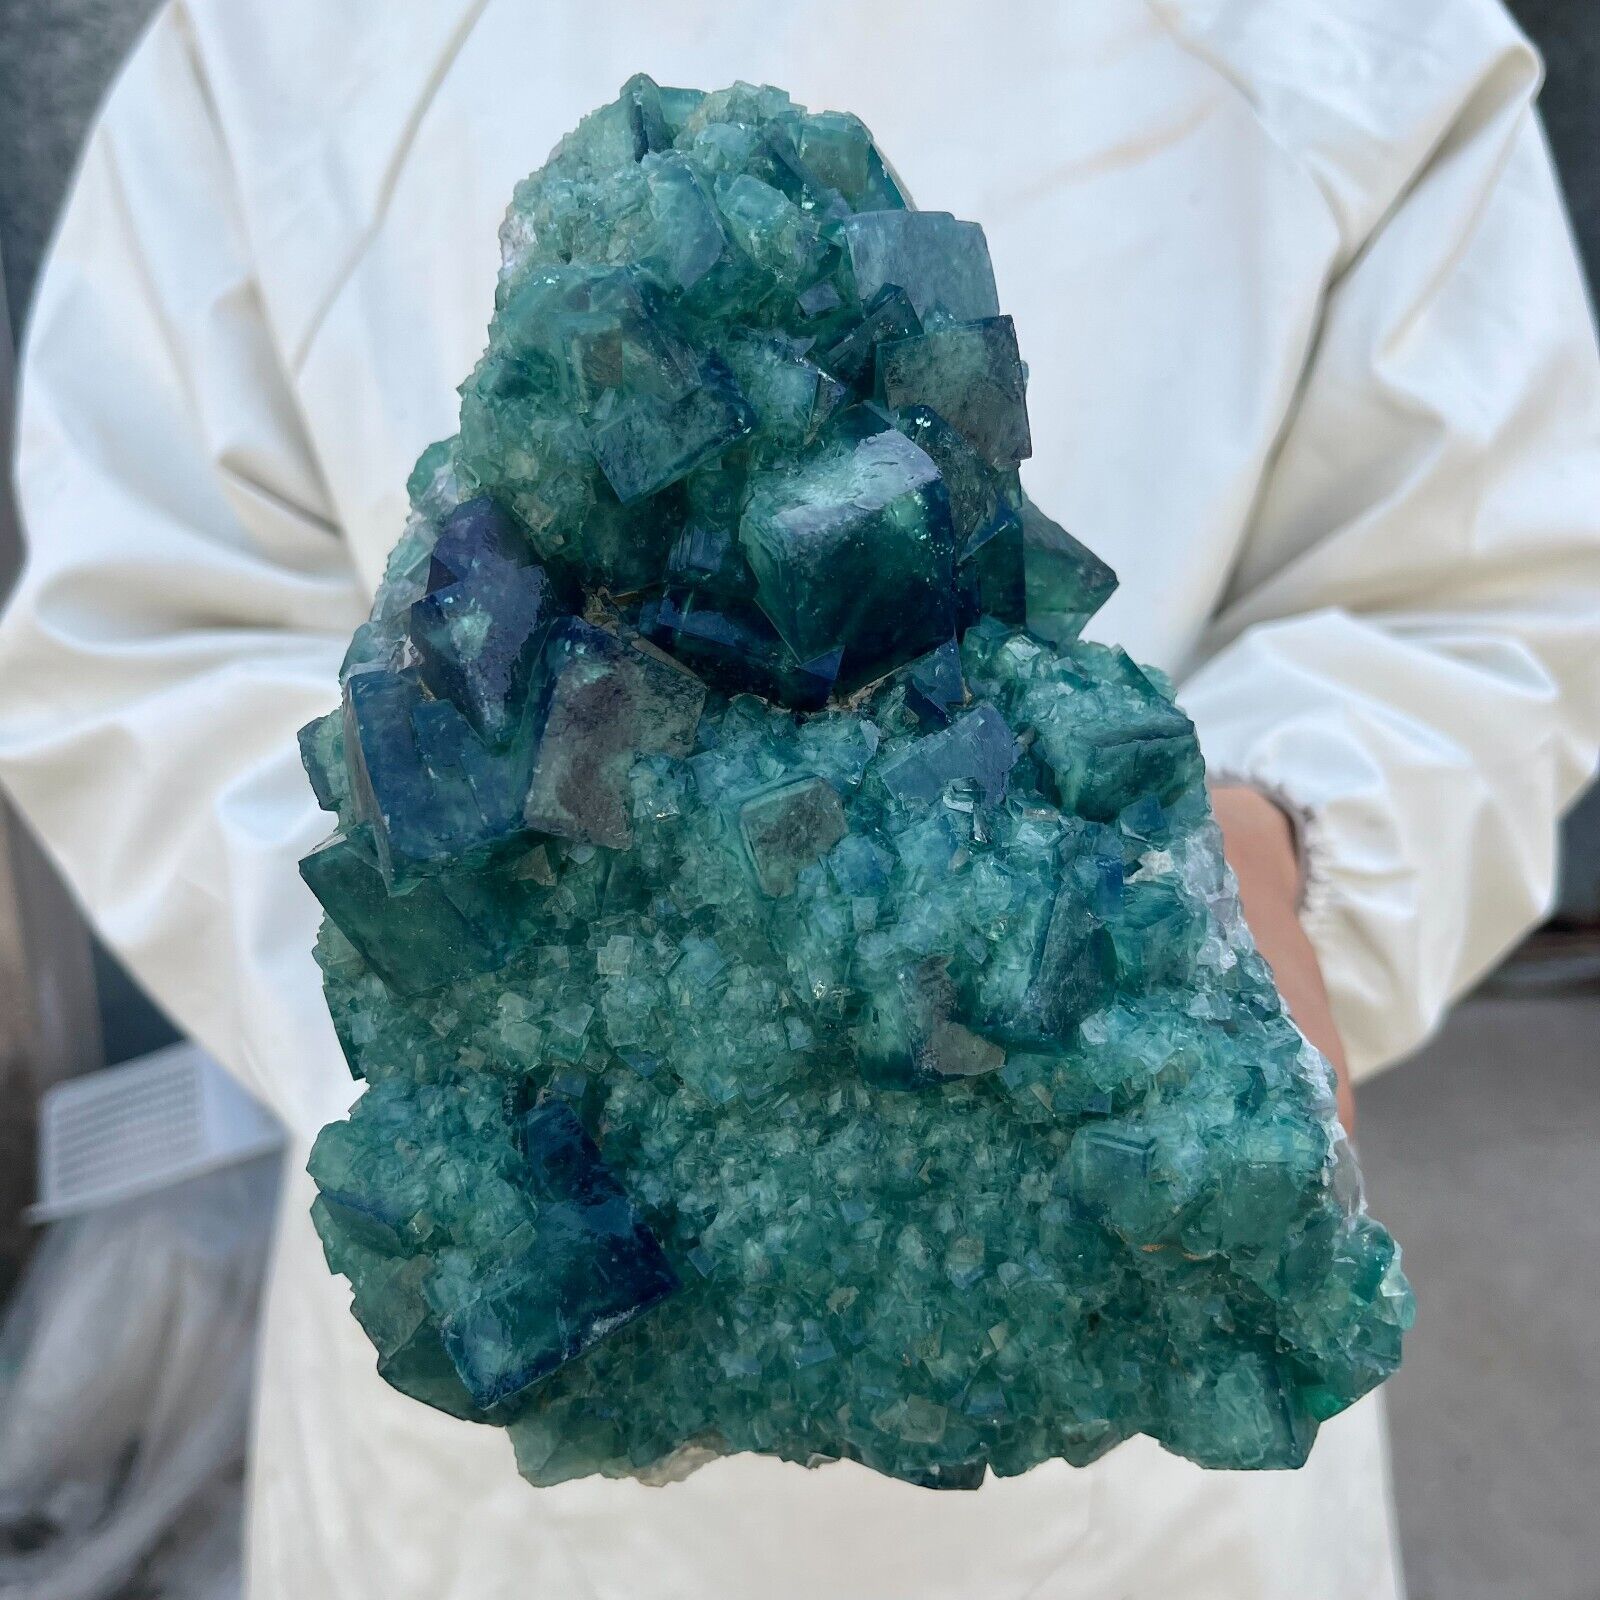 7.7LB Large NATURAL Green Cube FLUORITE Quartz Crystal Cluster Mineral Specimen